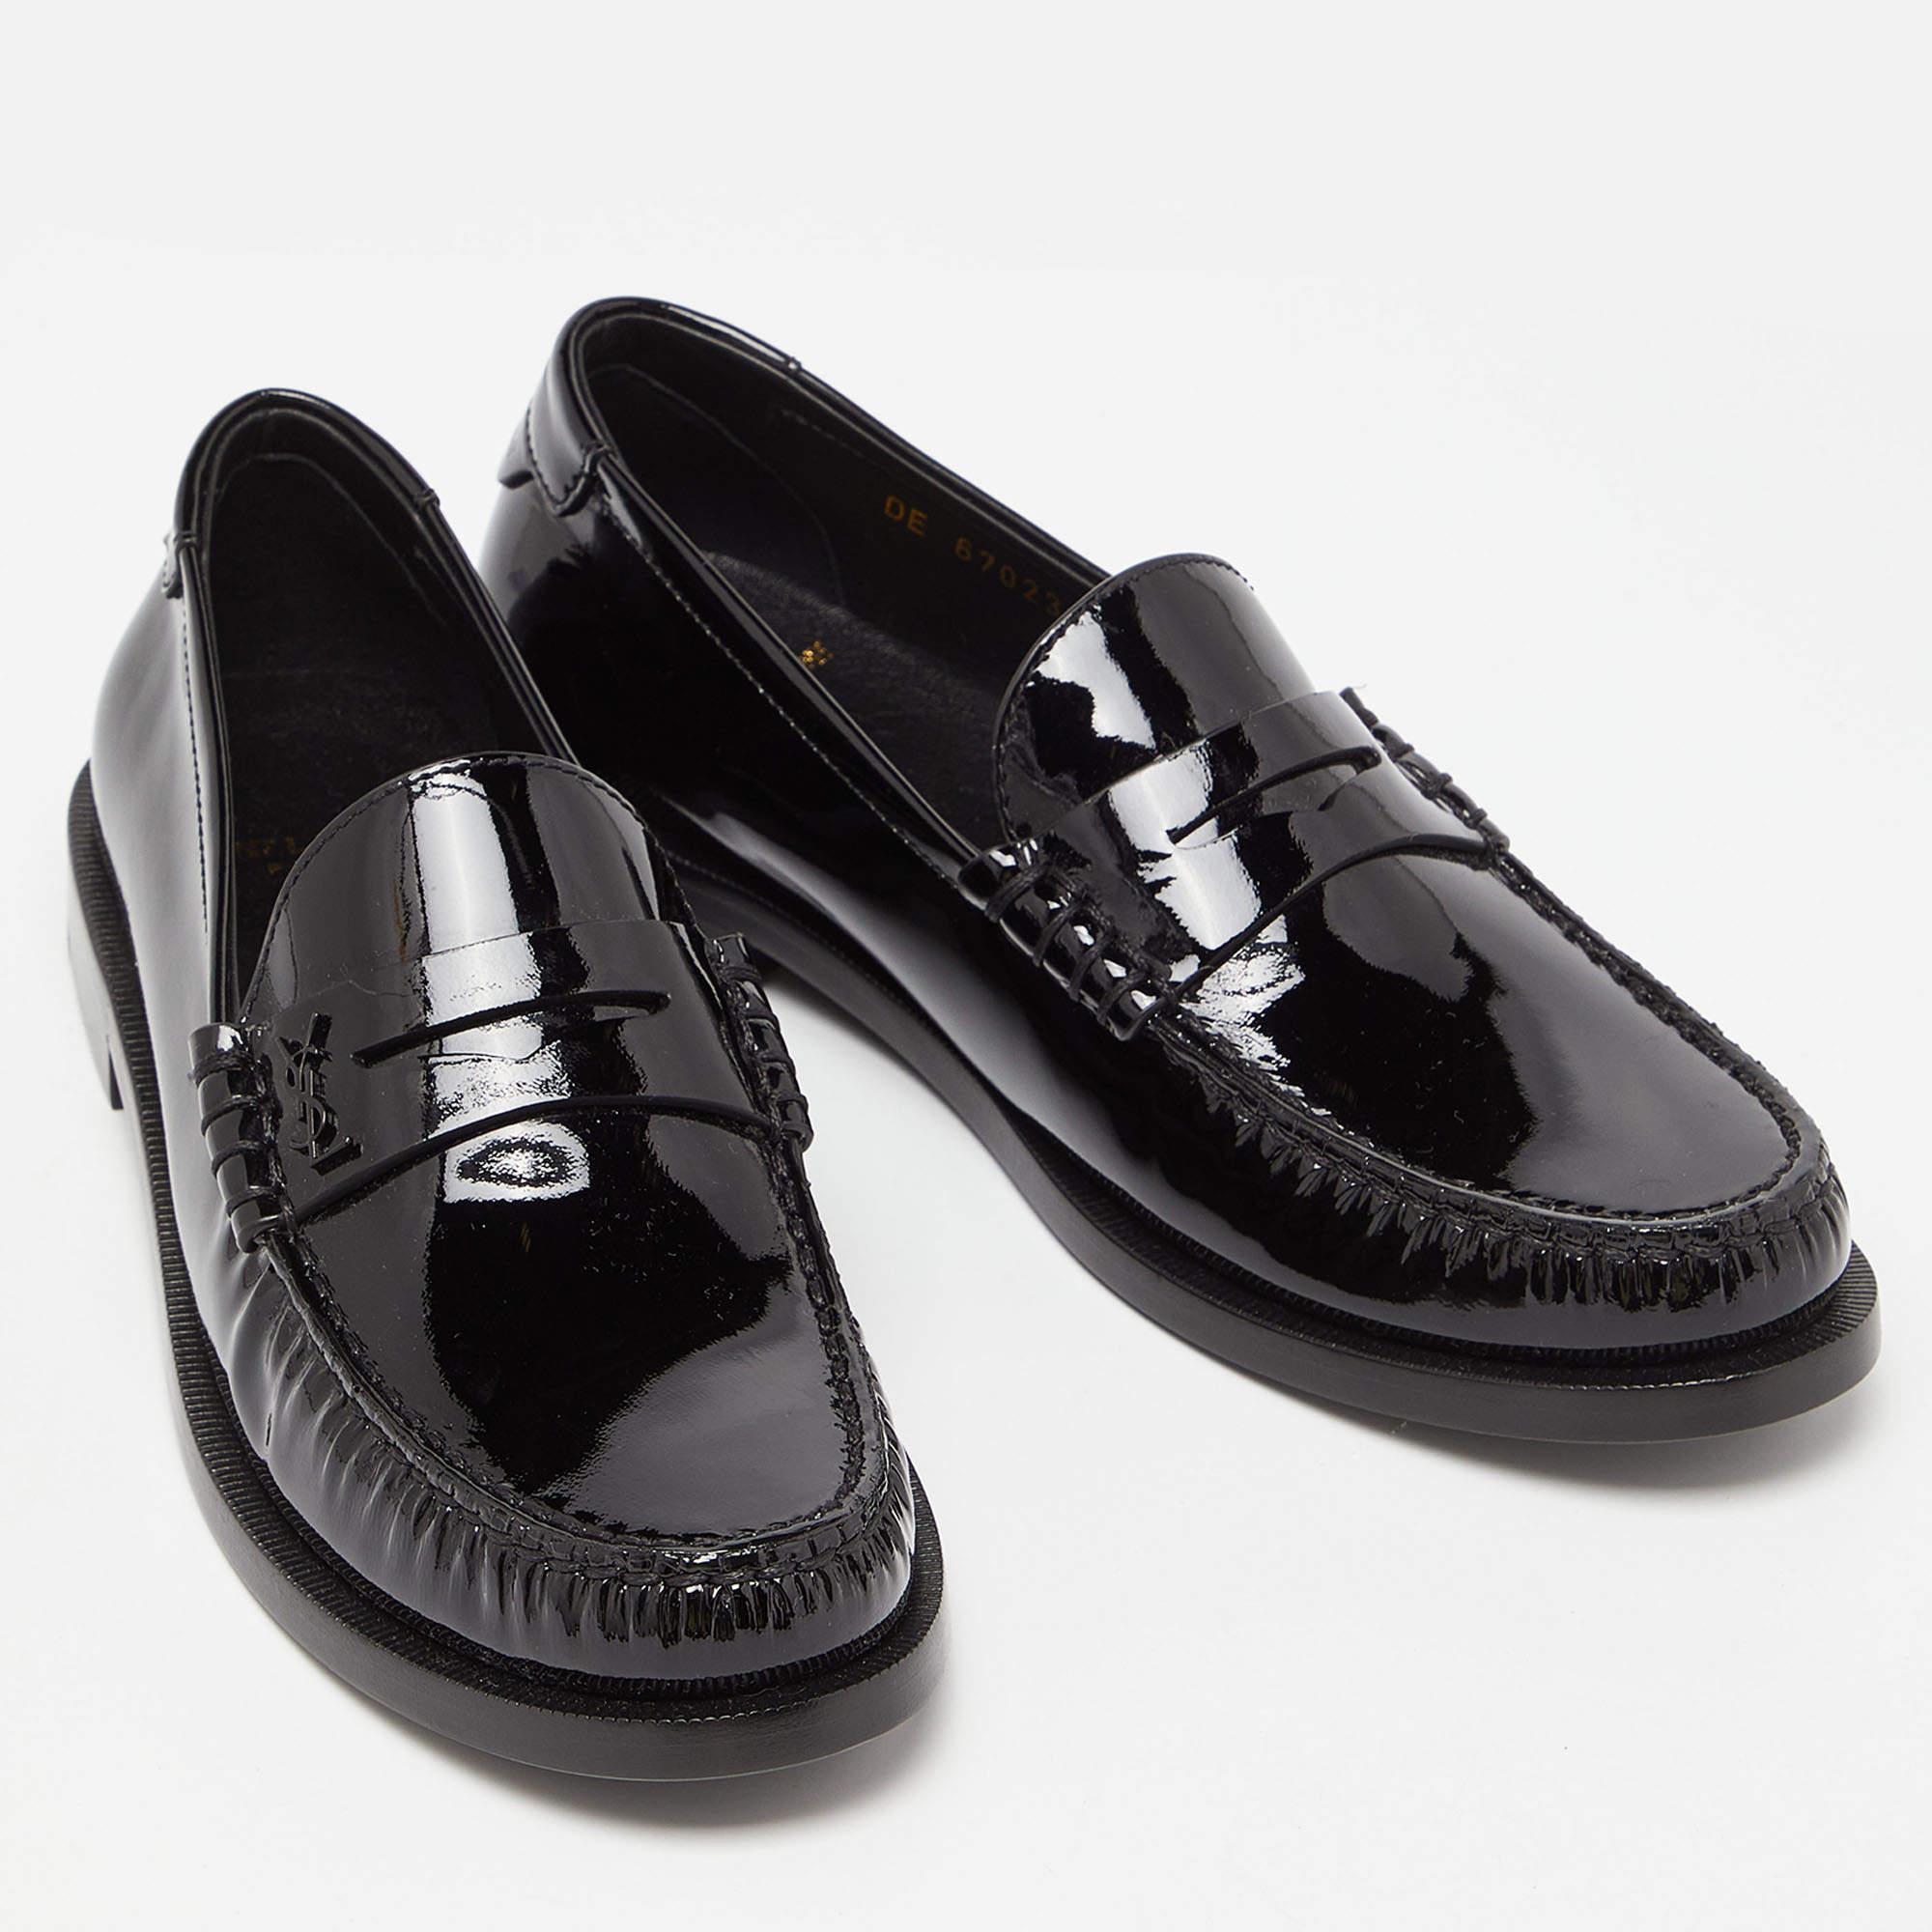 Saint Laurent Black Patent Leather Penny Le Loafers Size 37.5 5